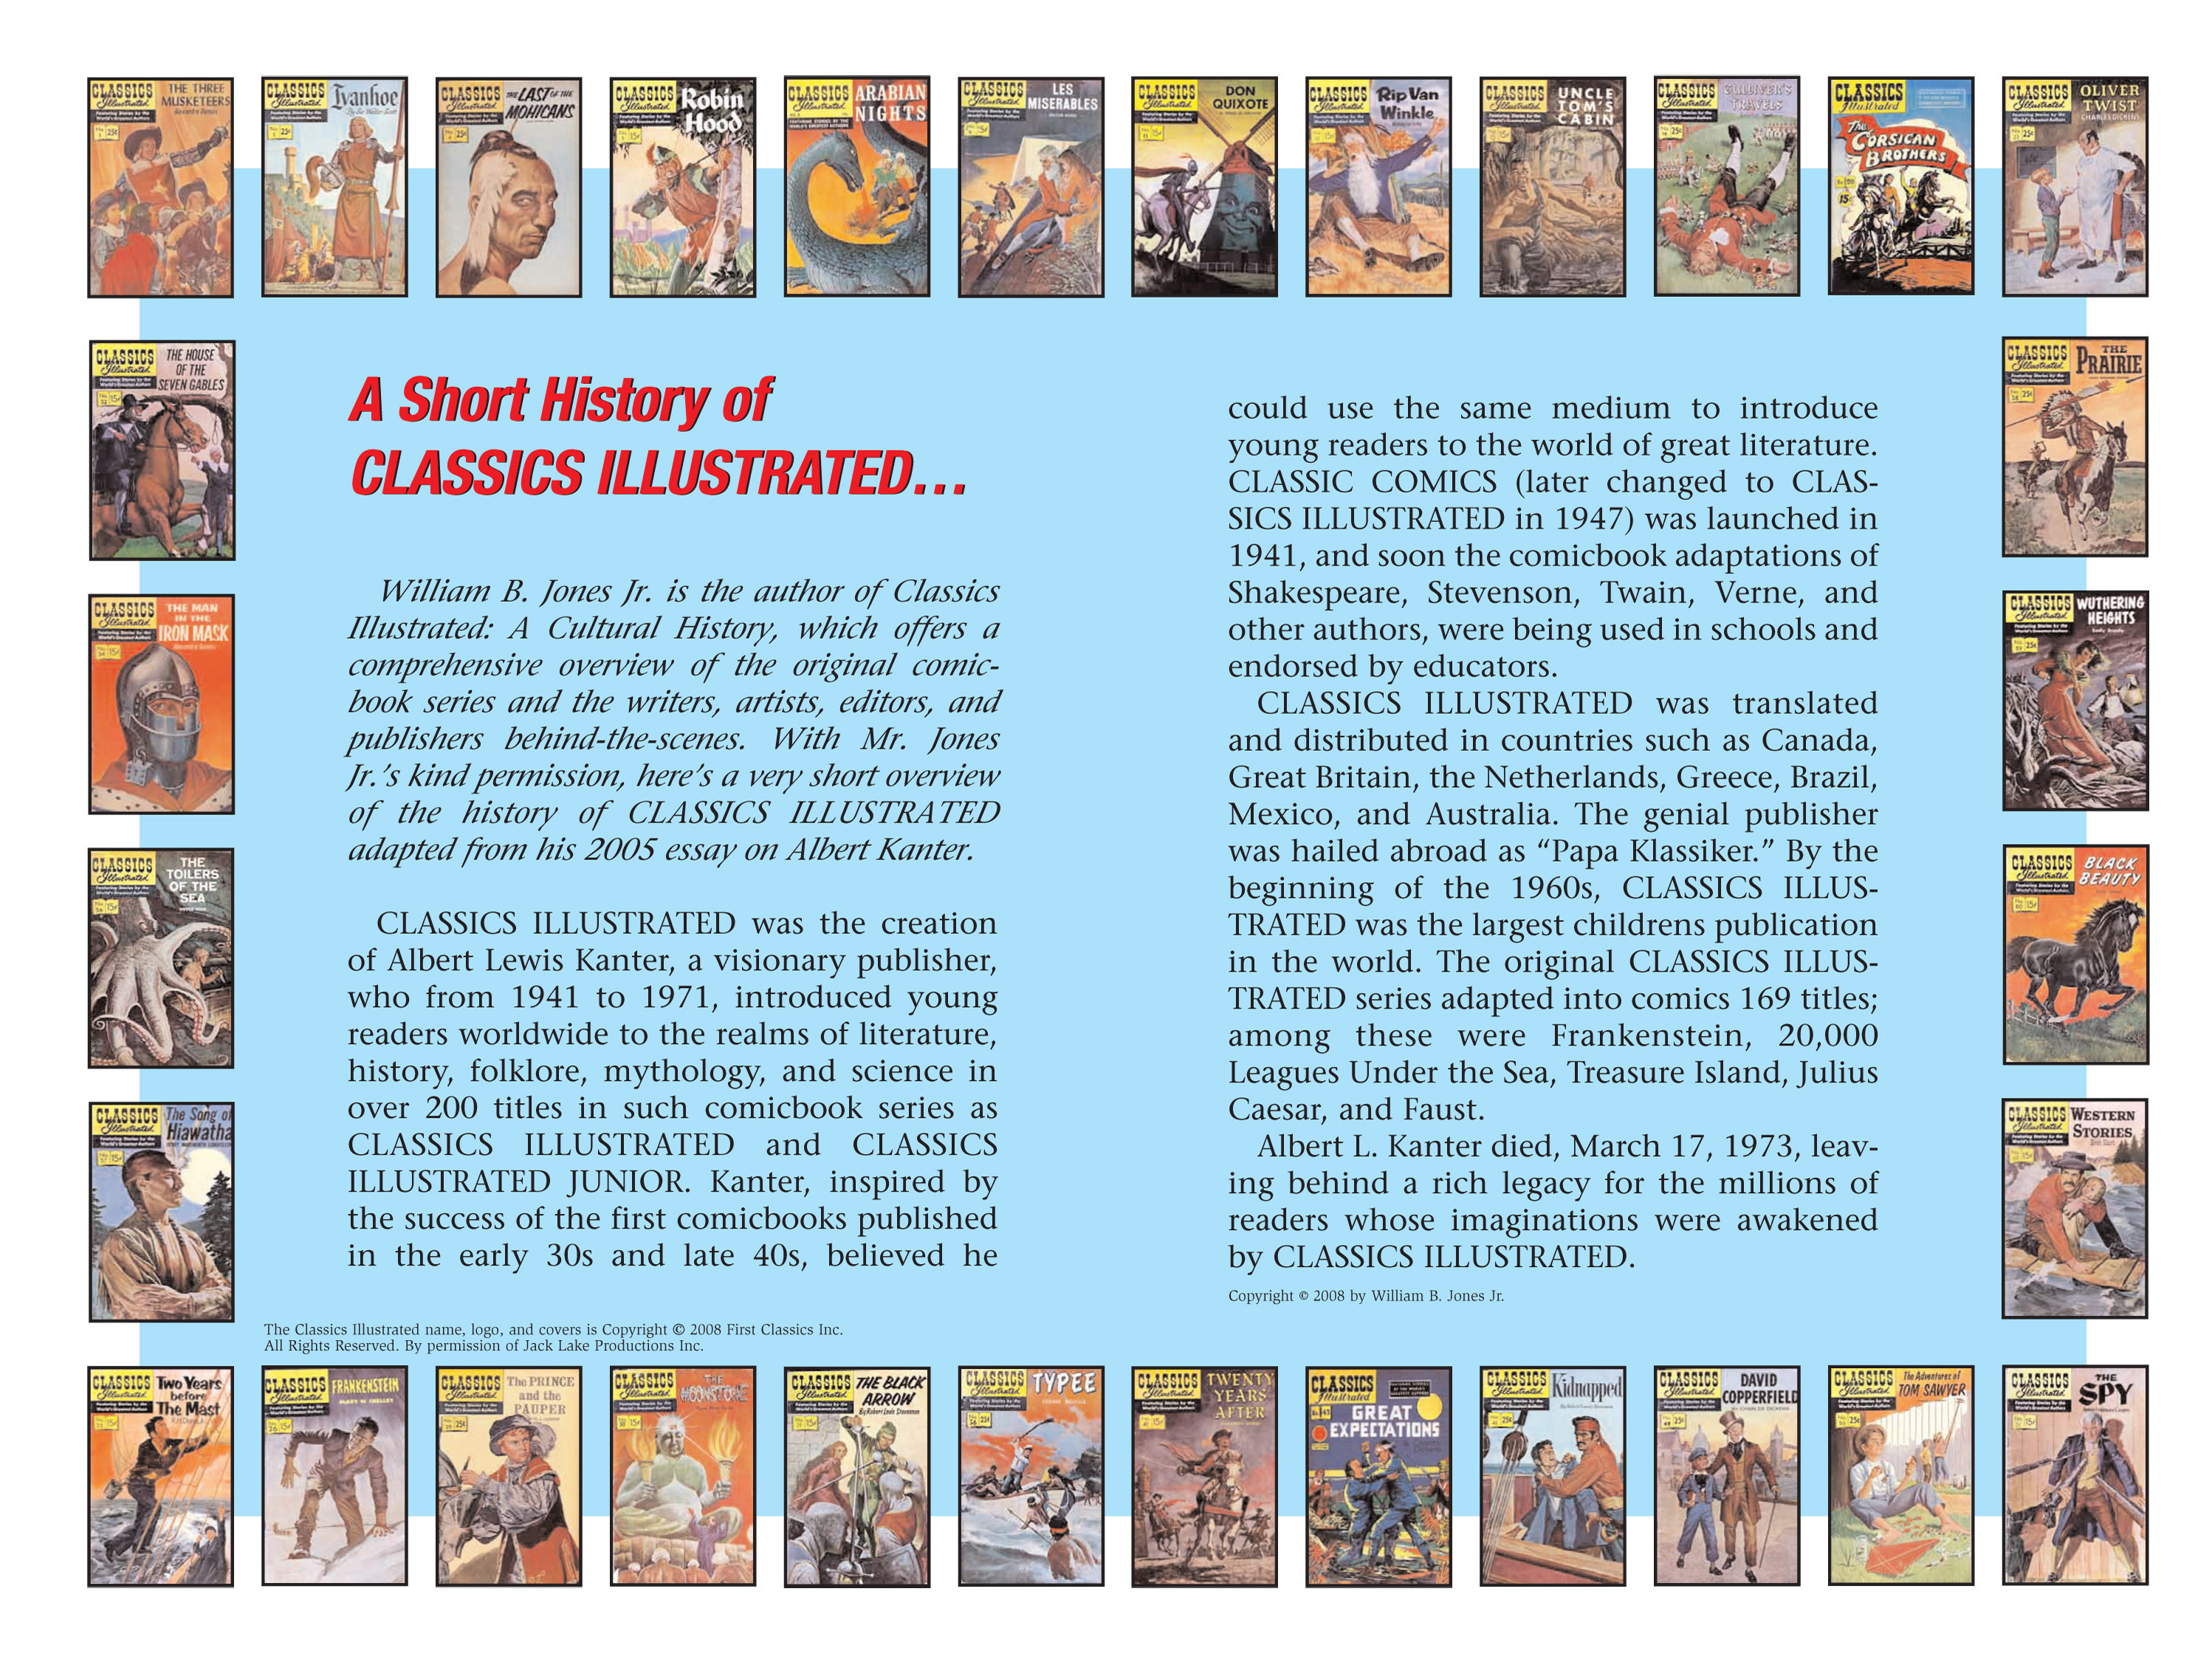 Read online Nancy Drew comic -  Issue #10 - 108